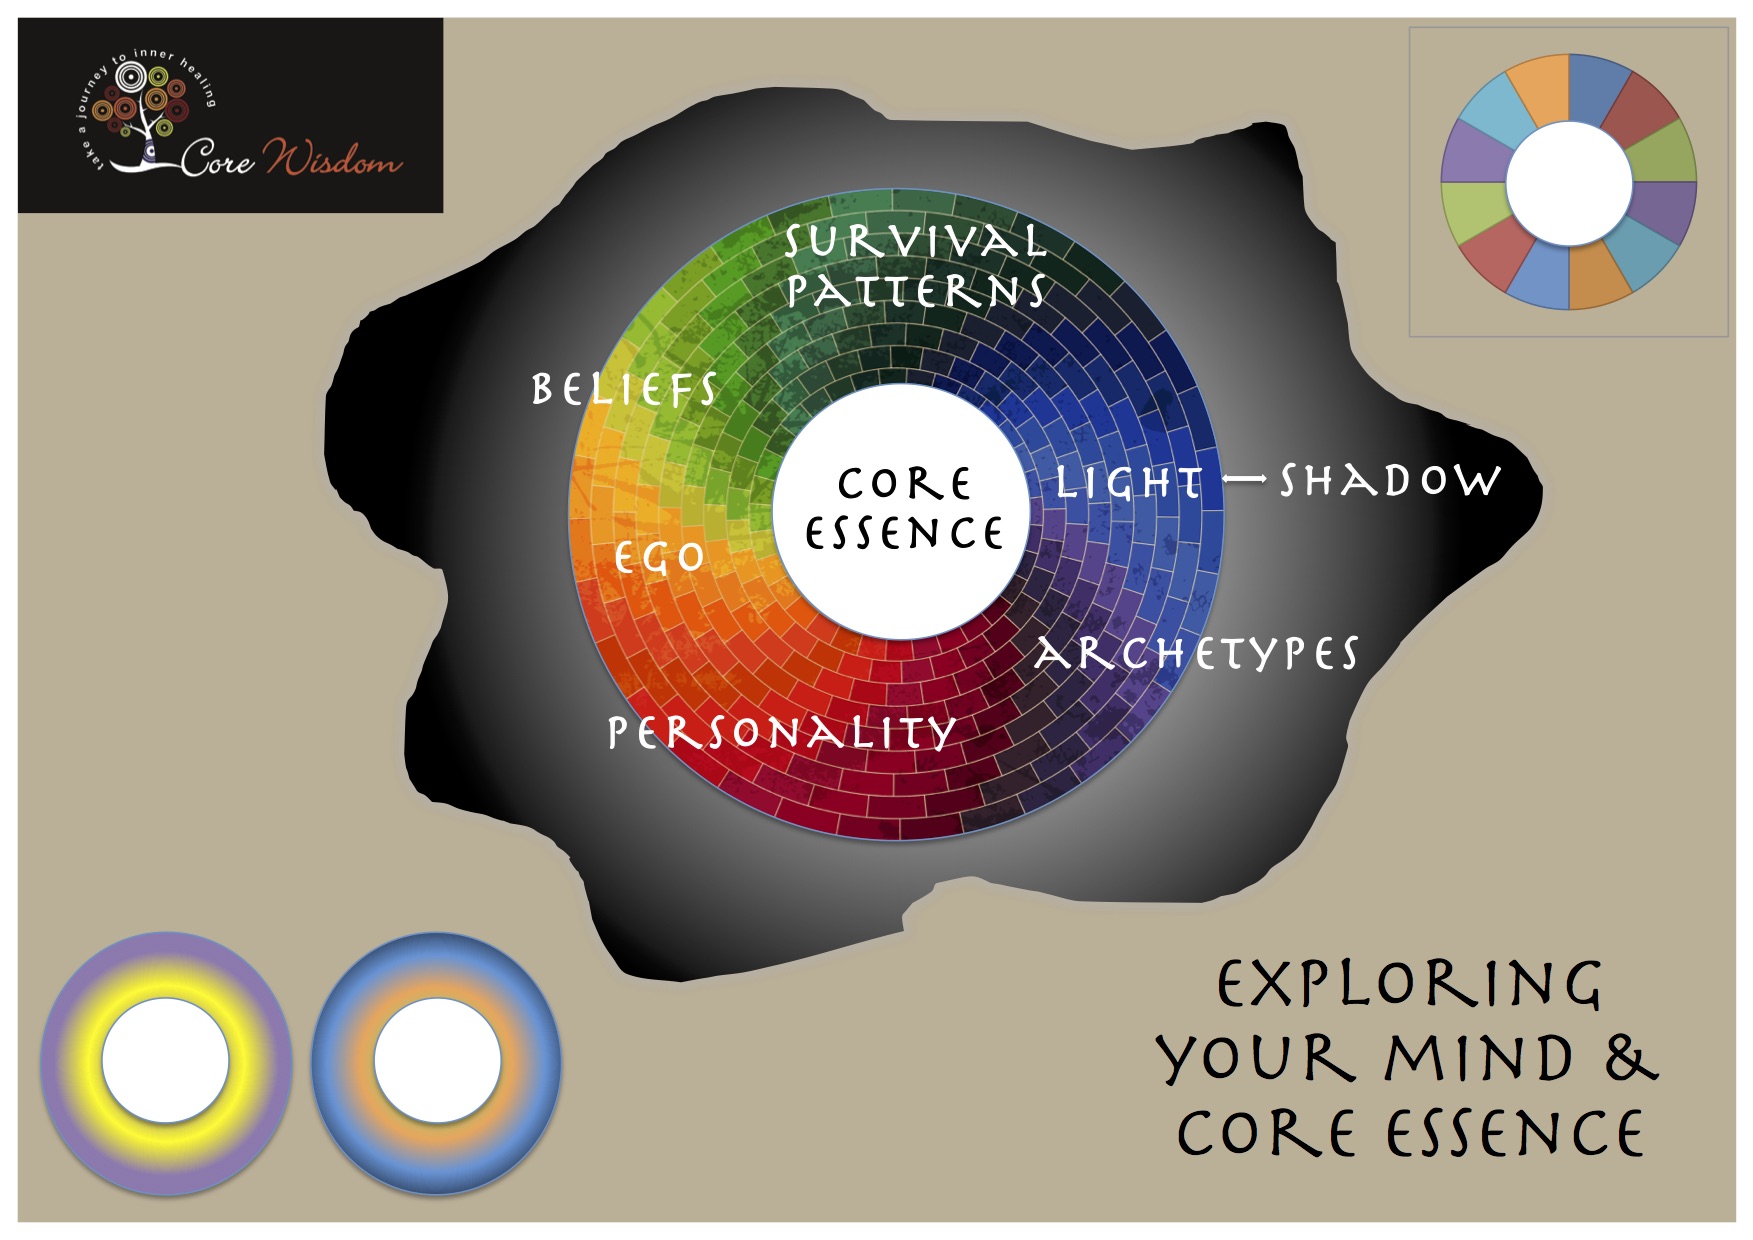 Core Wisdom Core and Ego Evolution